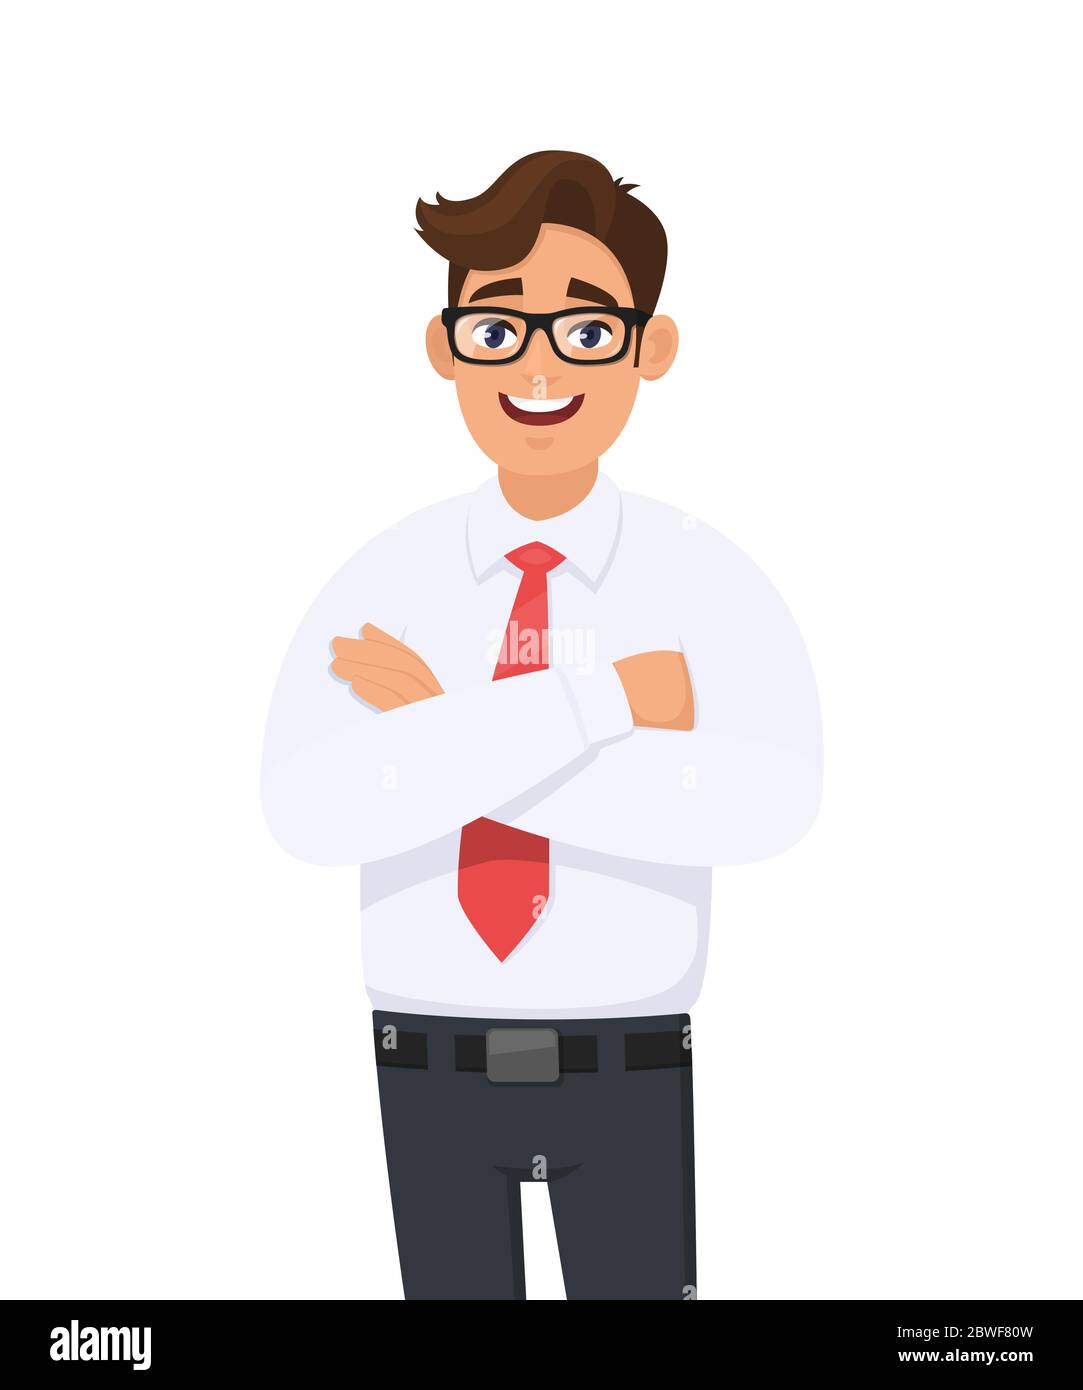 Ritratto di bel giovane in camicia bianca e cravatta rossa che tiene incrociate le braccia, con occhiali. Uomo d'affari in piedi con braccia ripiegate posa. Vettore Illustrazione Vettoriale